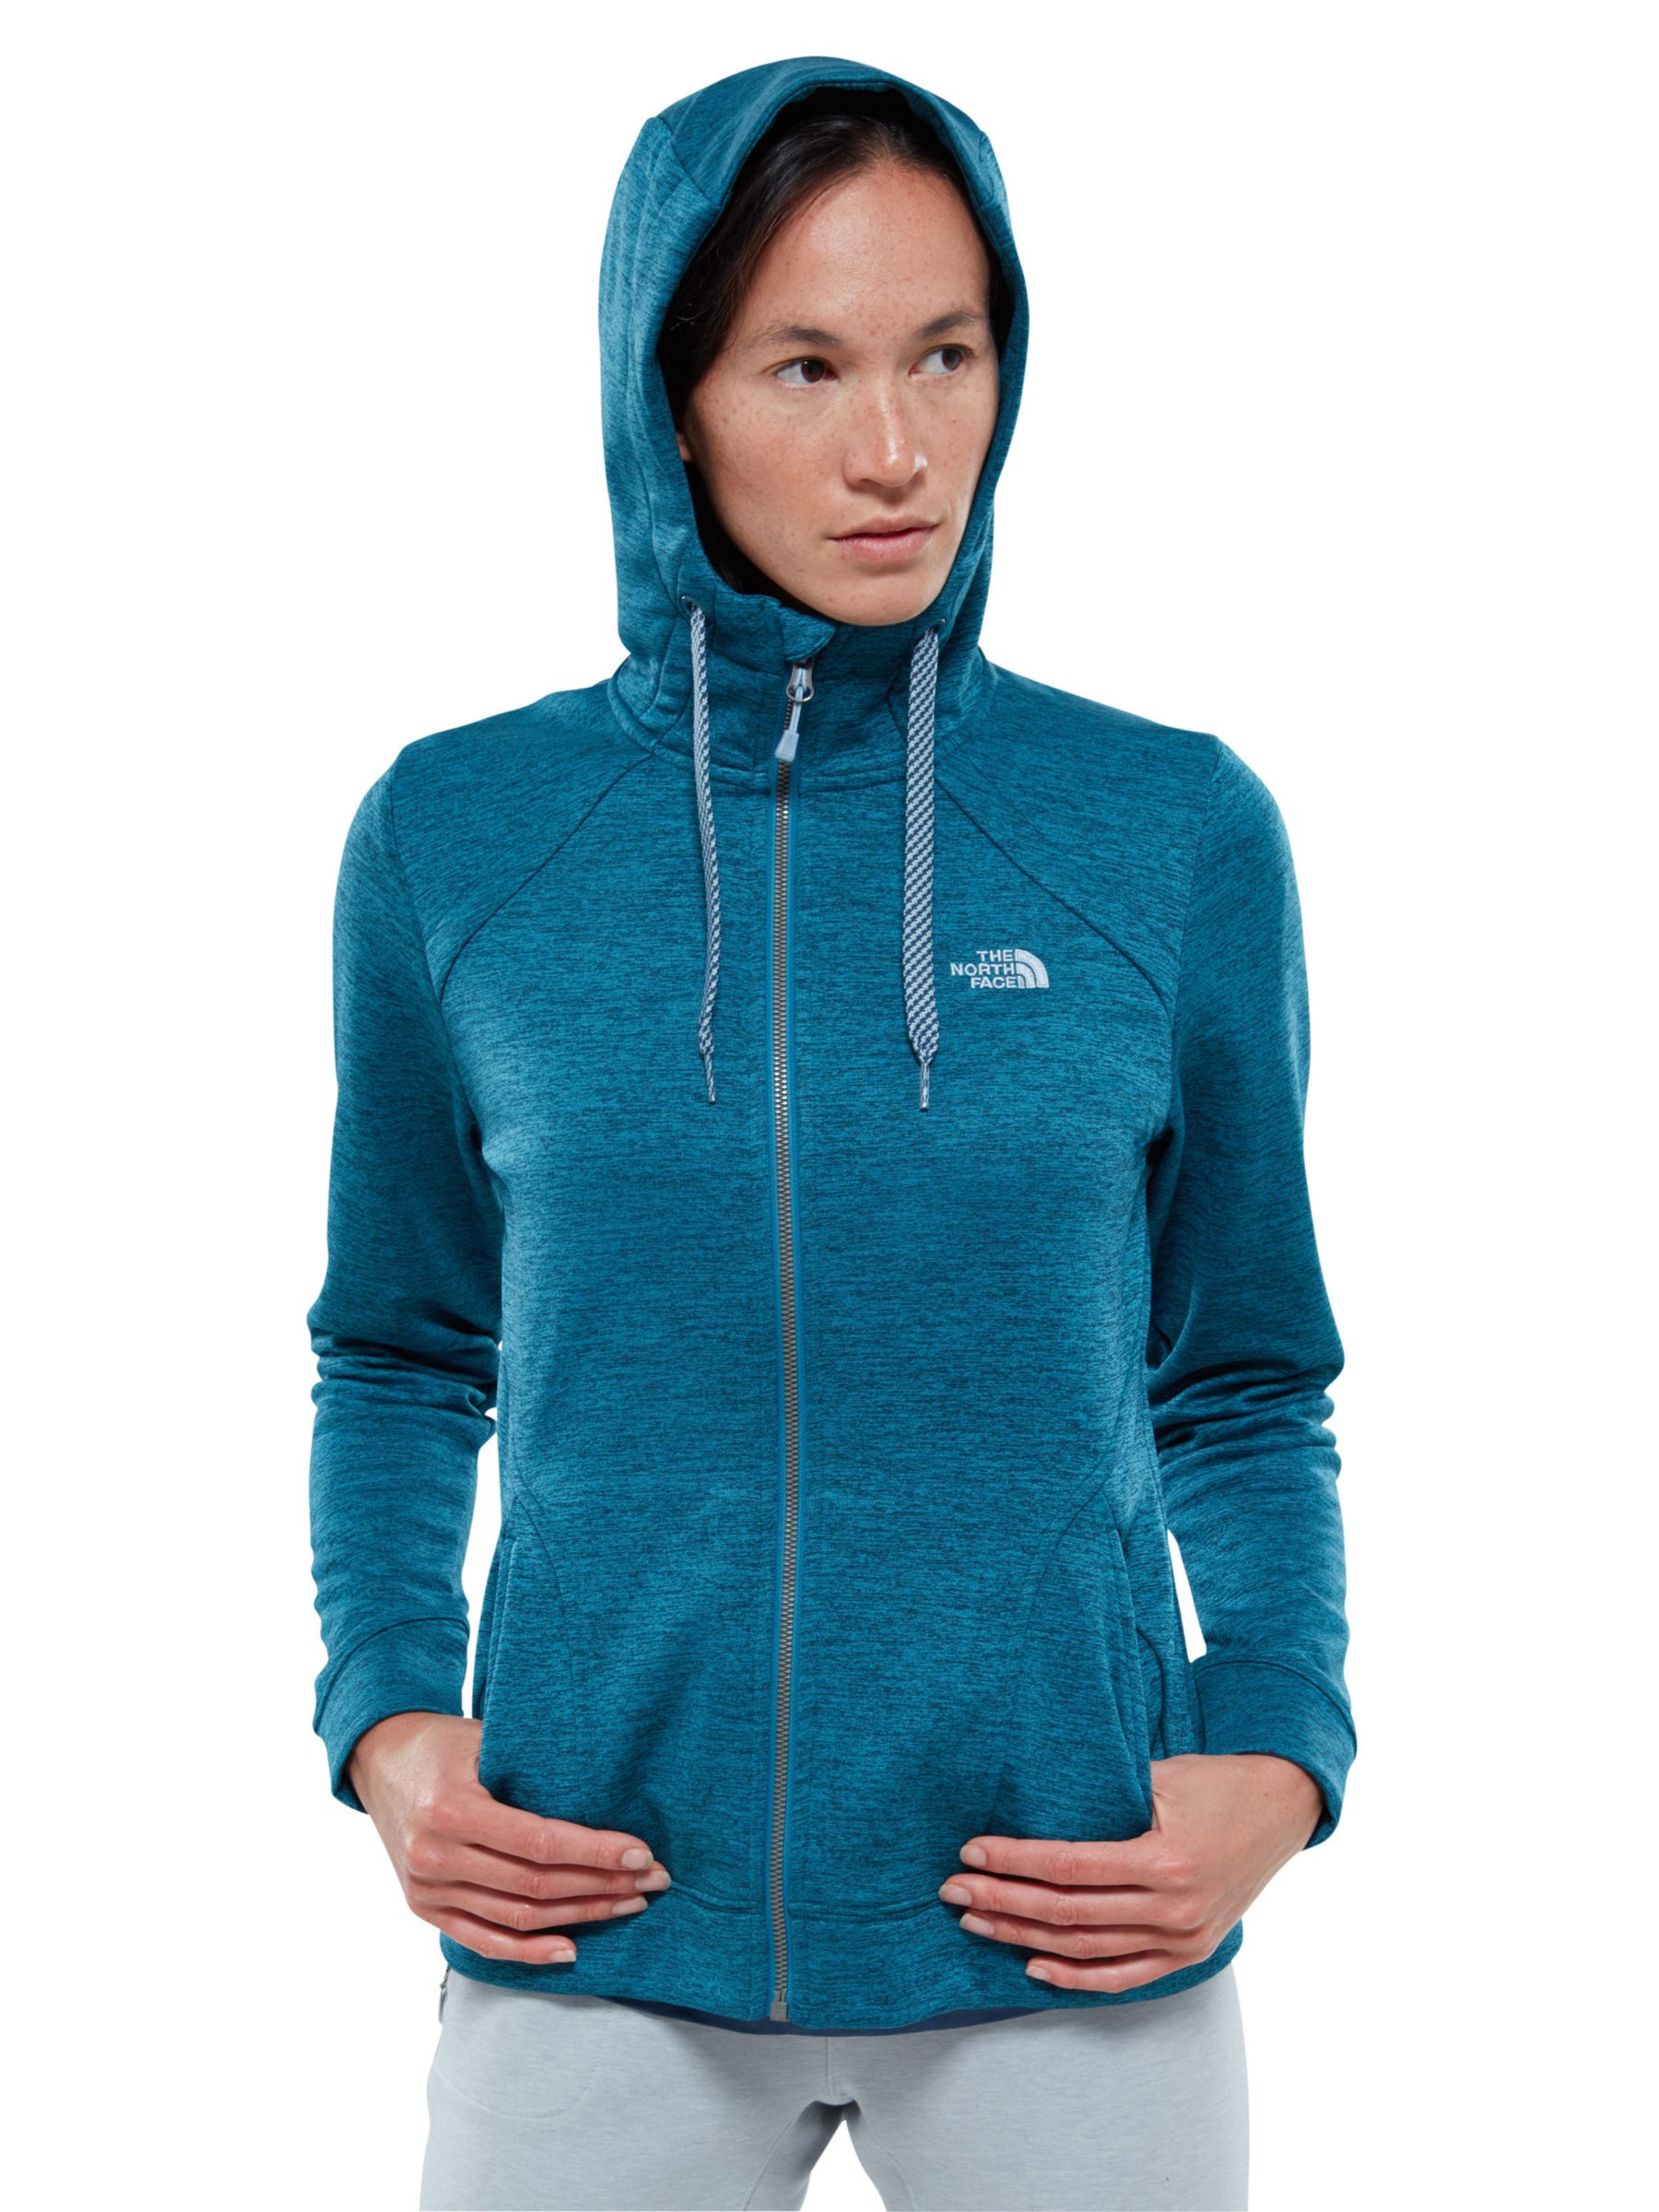 The North Face Kutum Full Zip Fleece Women's Hoodie Jacket, Blue, S